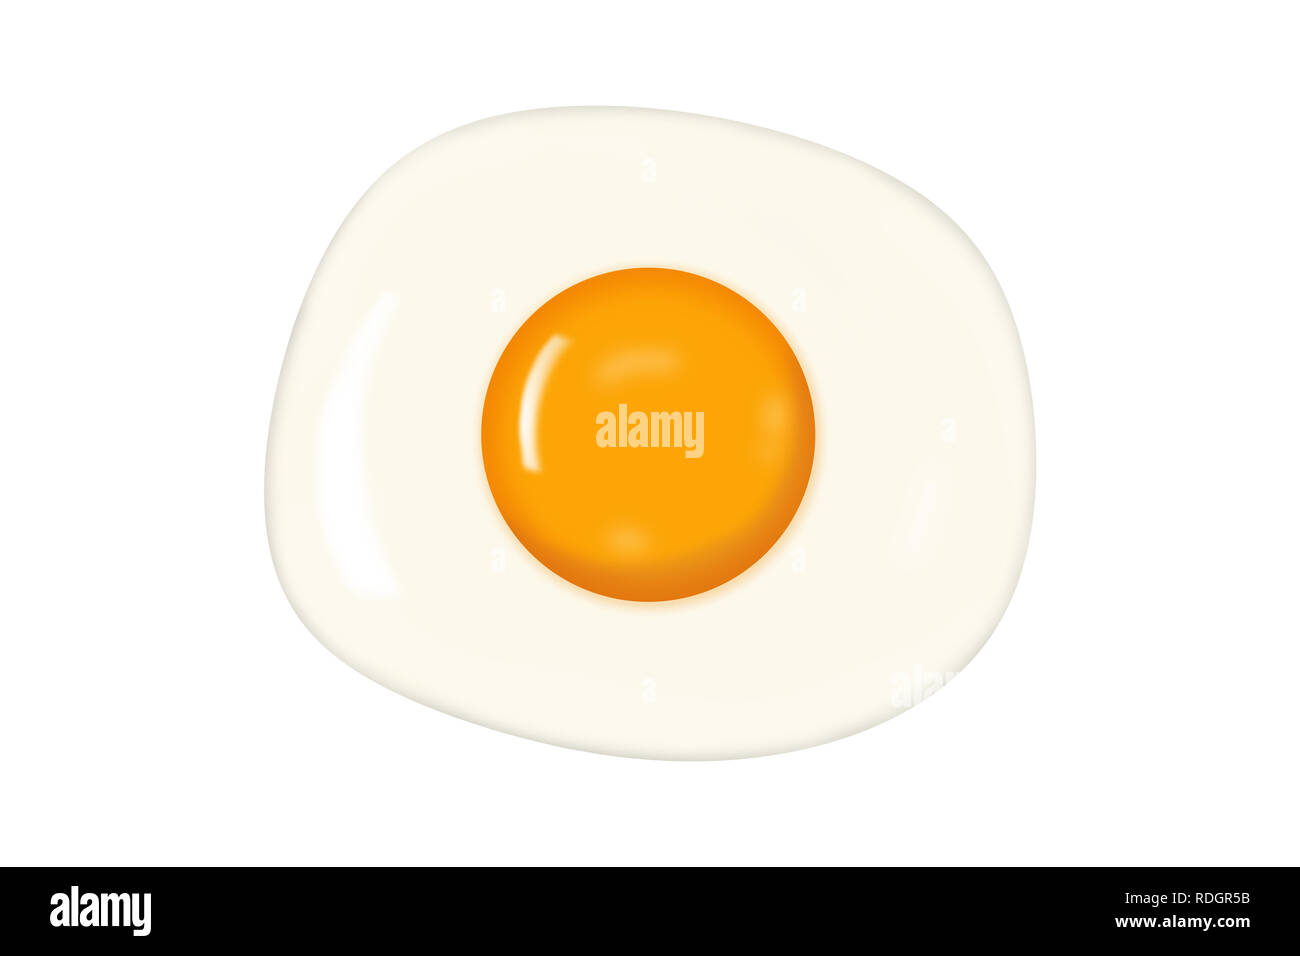 Fried egg isolated on white background. Stock Photo